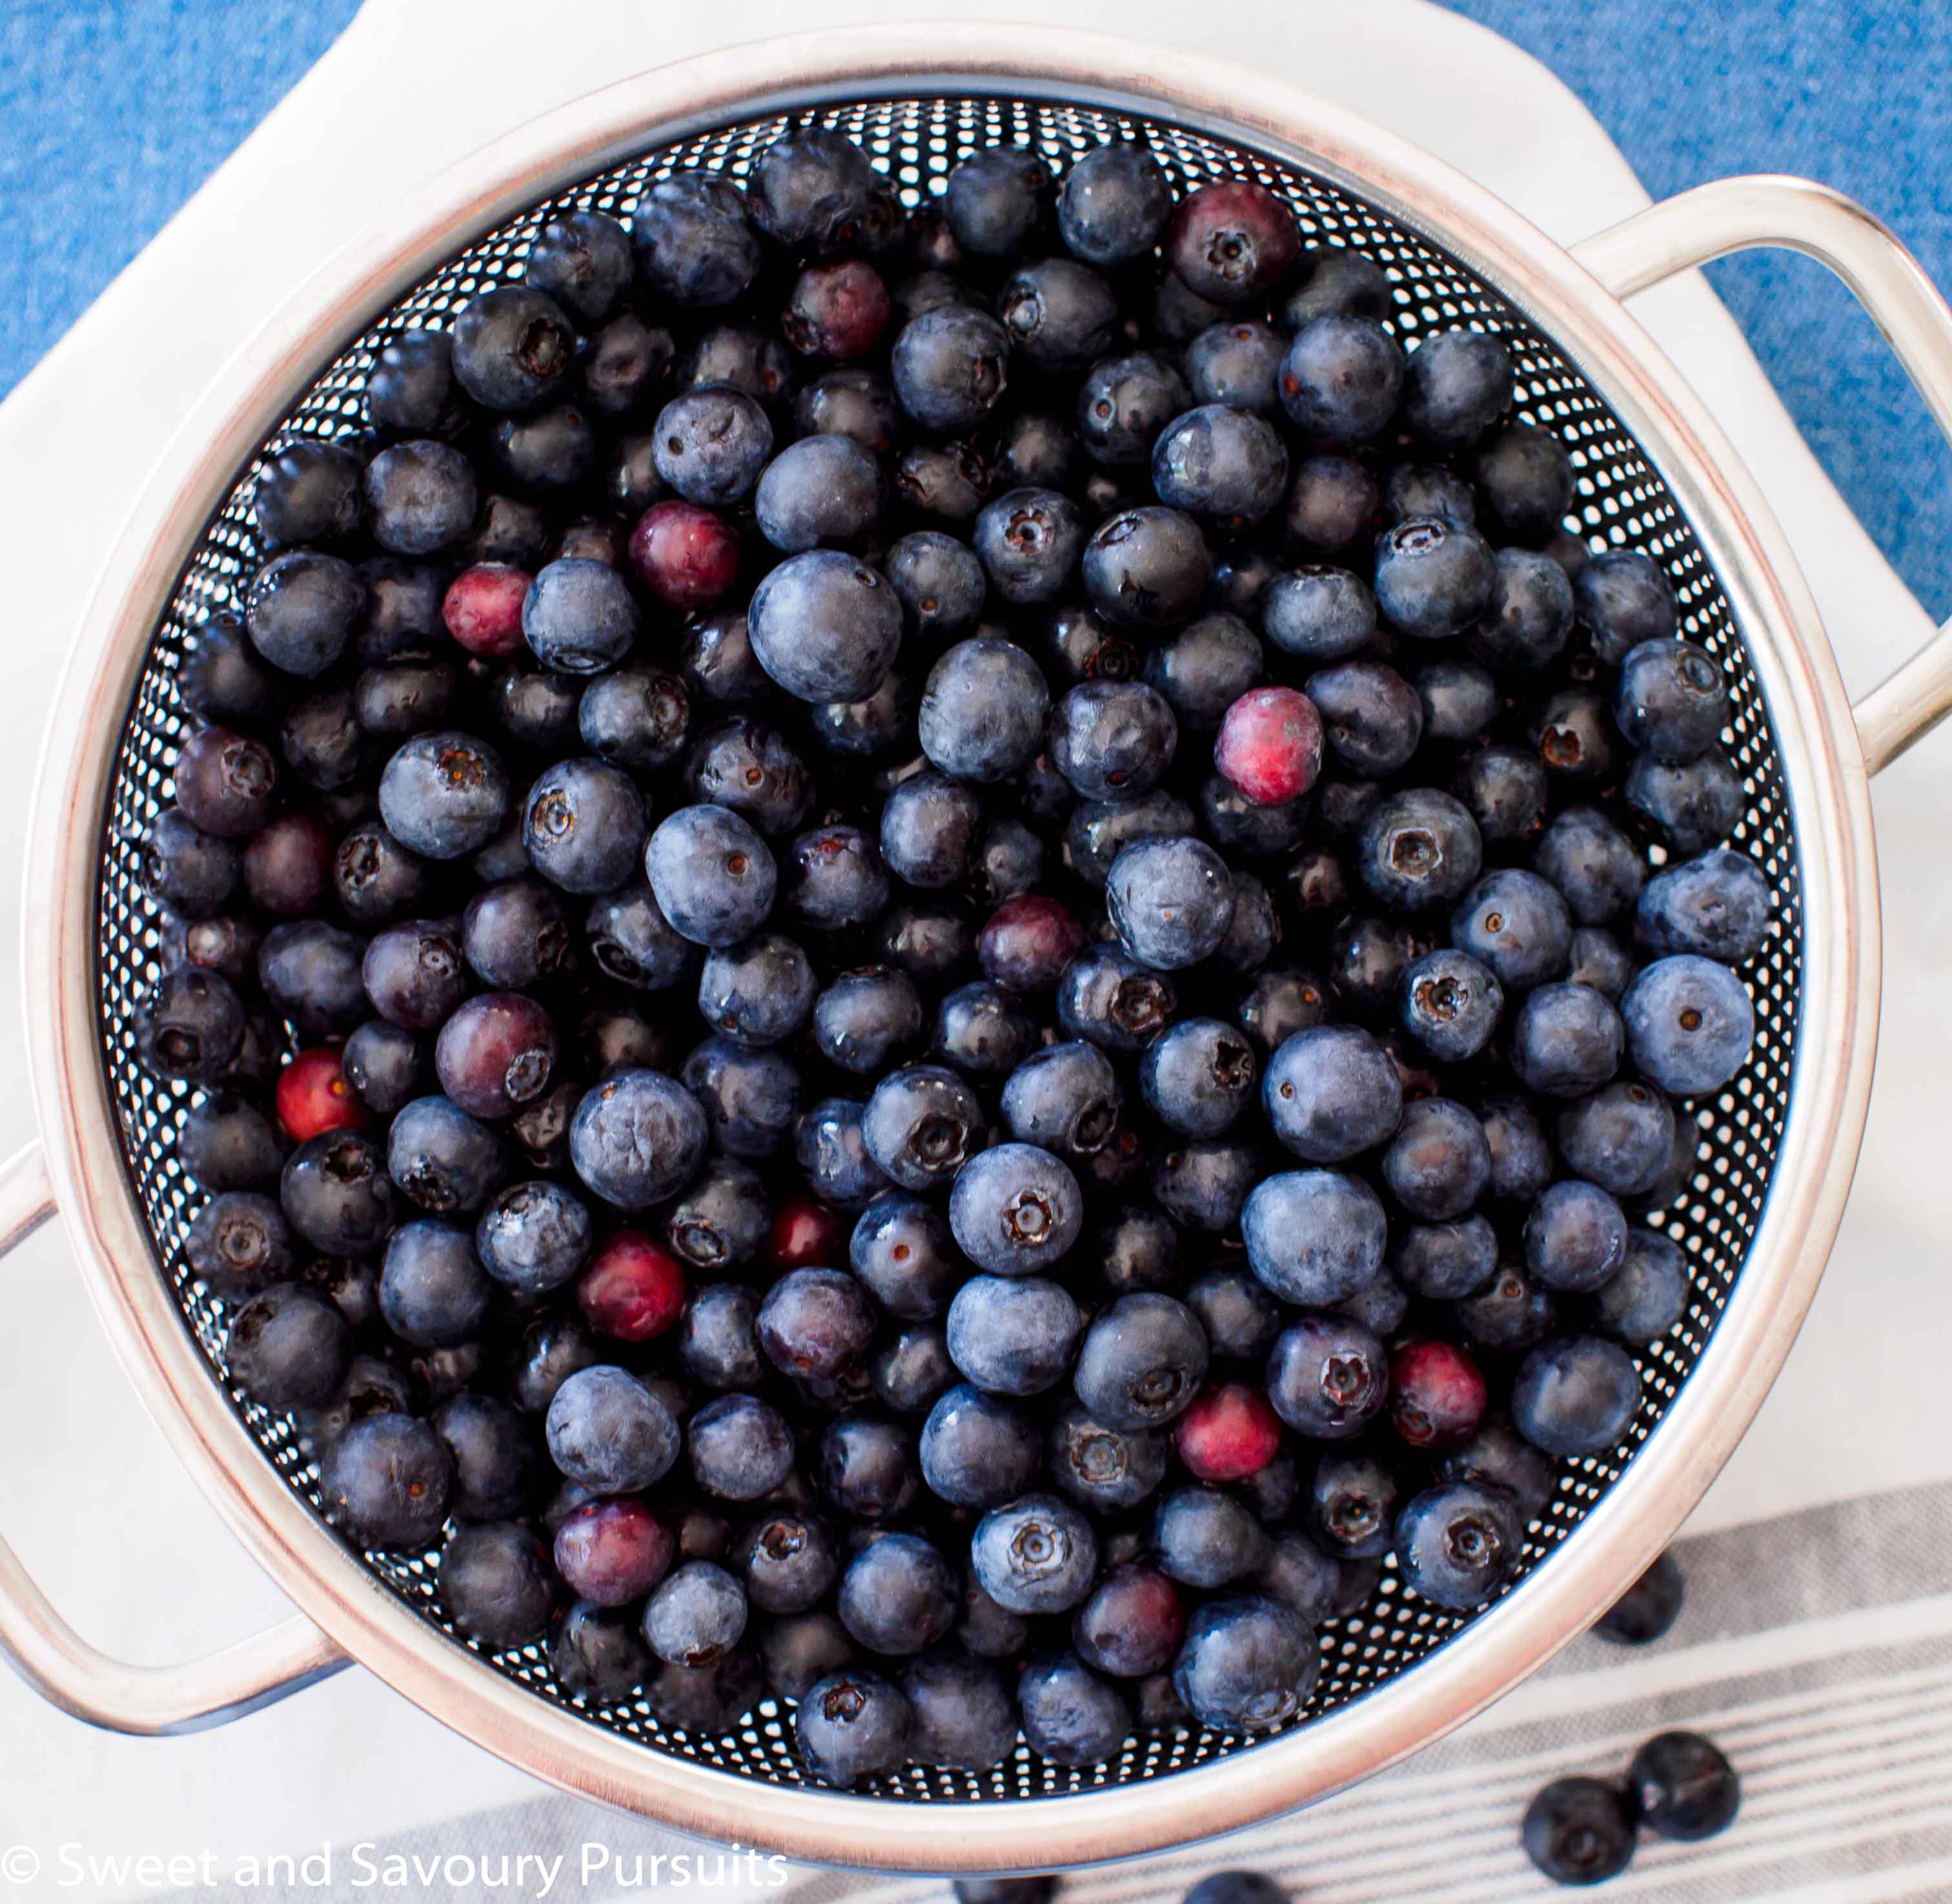 Rinsed blueberries in colander.